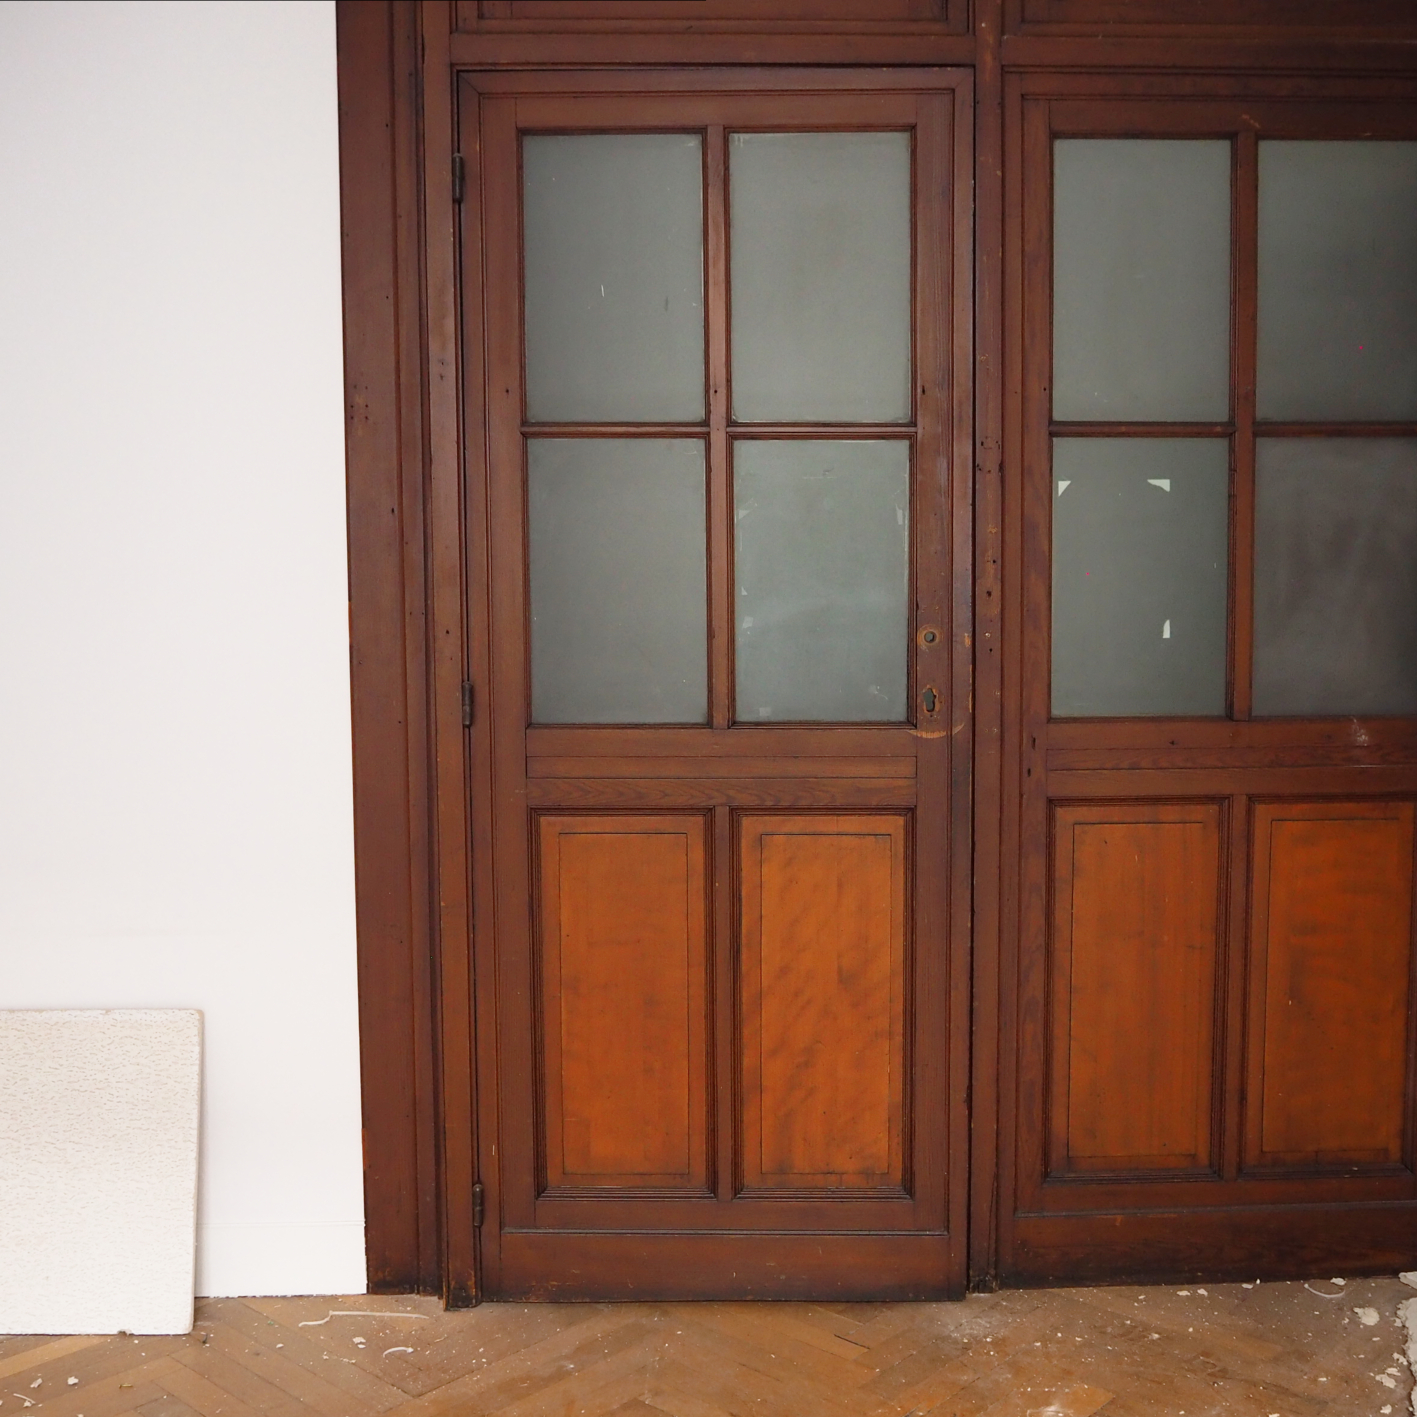 Solid wooden door with opaque glass panels